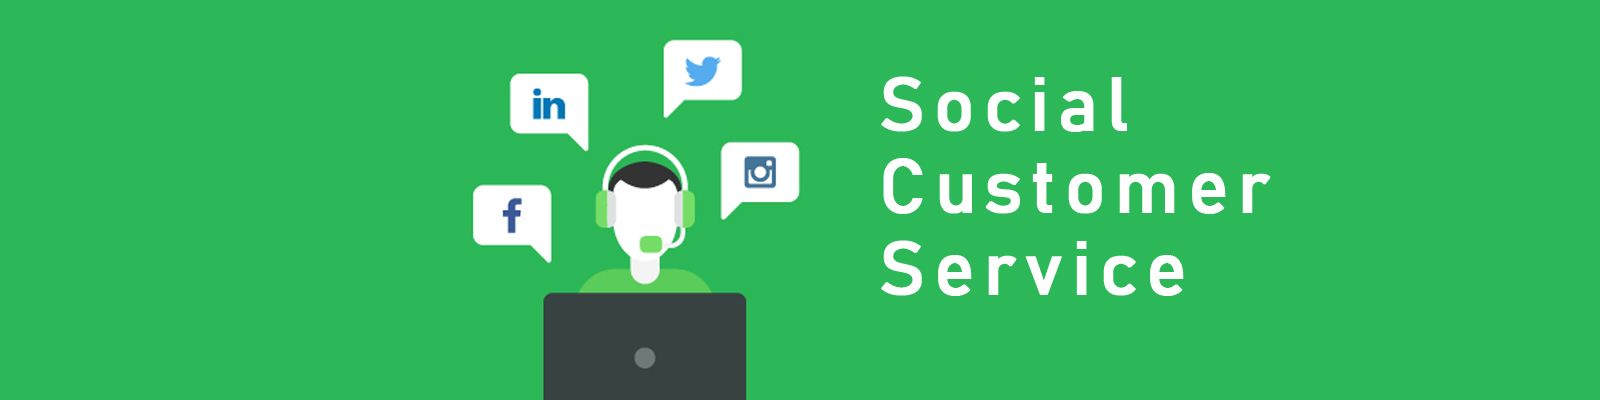 Social Customer Service